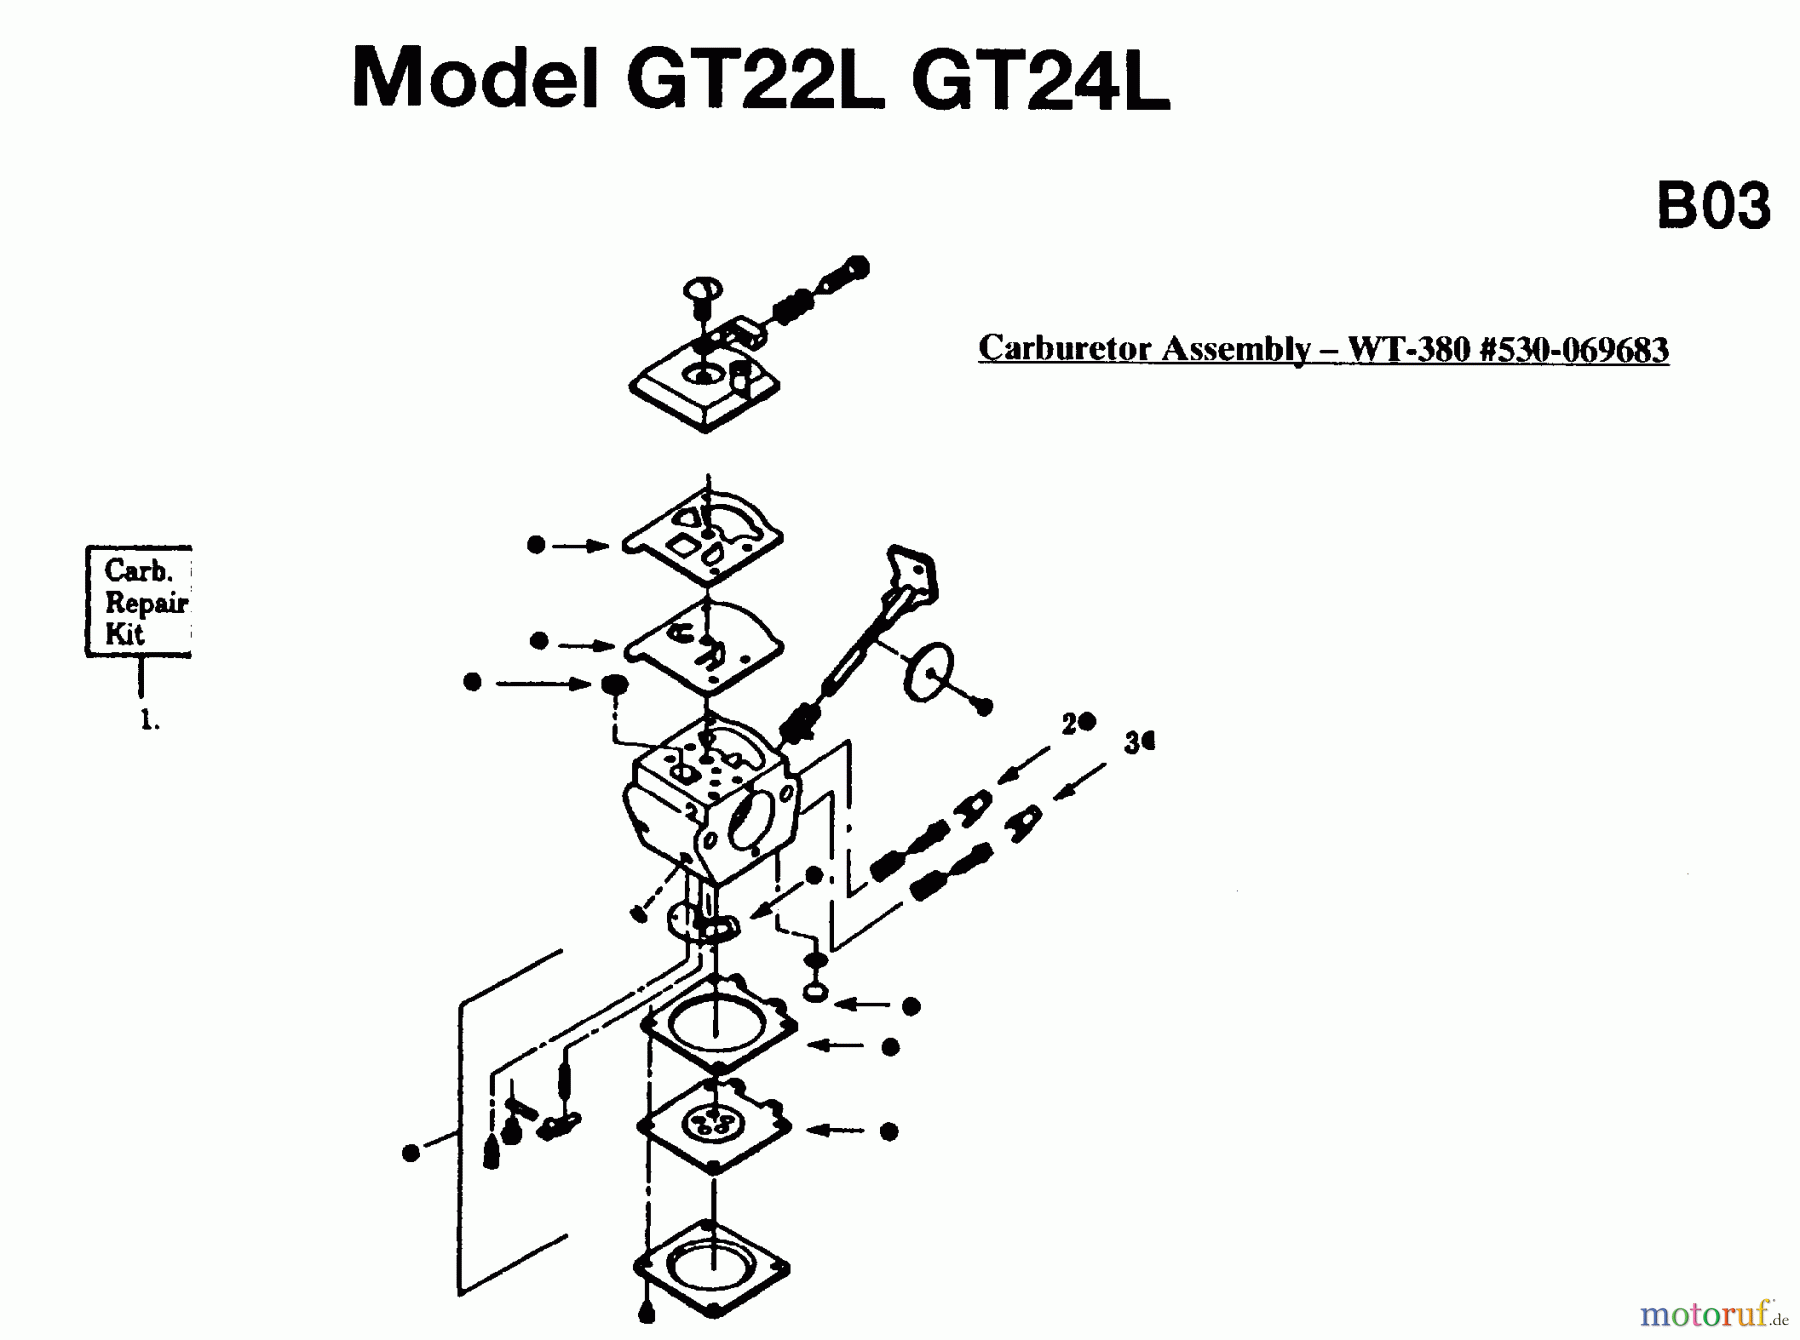  Jonsered Motorsensen, Trimmer GT24L - Jonsered String/Brush Trimmer (1995-05) CARBURETOR DETAILS